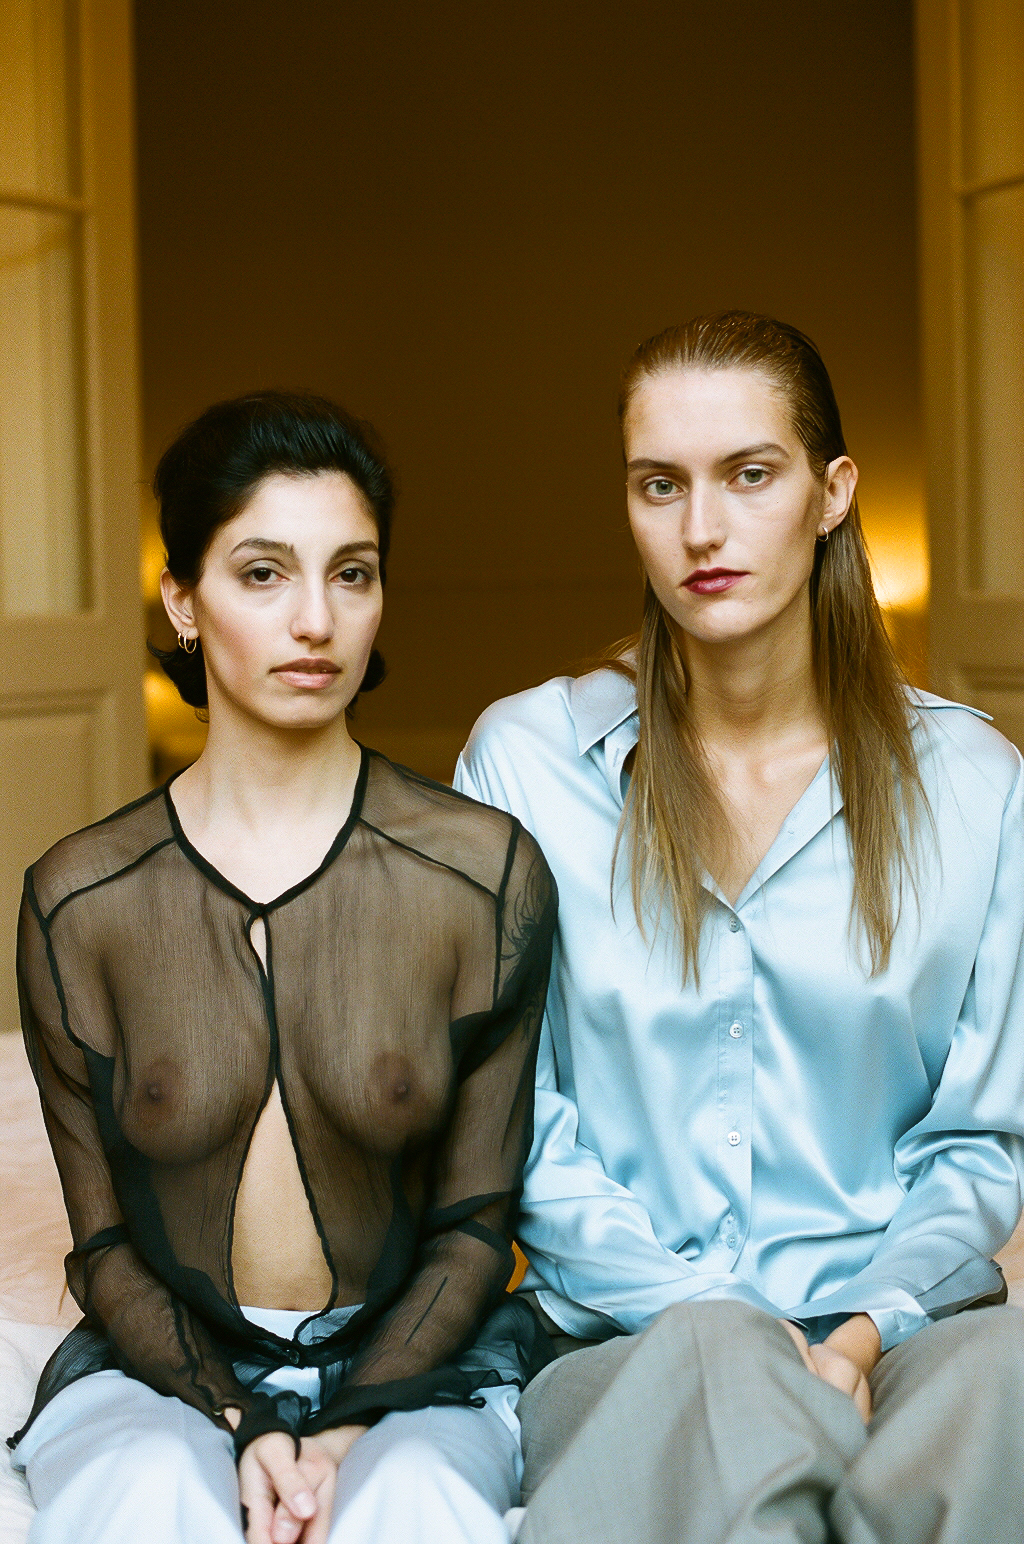 Us Fashion Editorial by Sarah Tahon & Amanda Ljungkvist